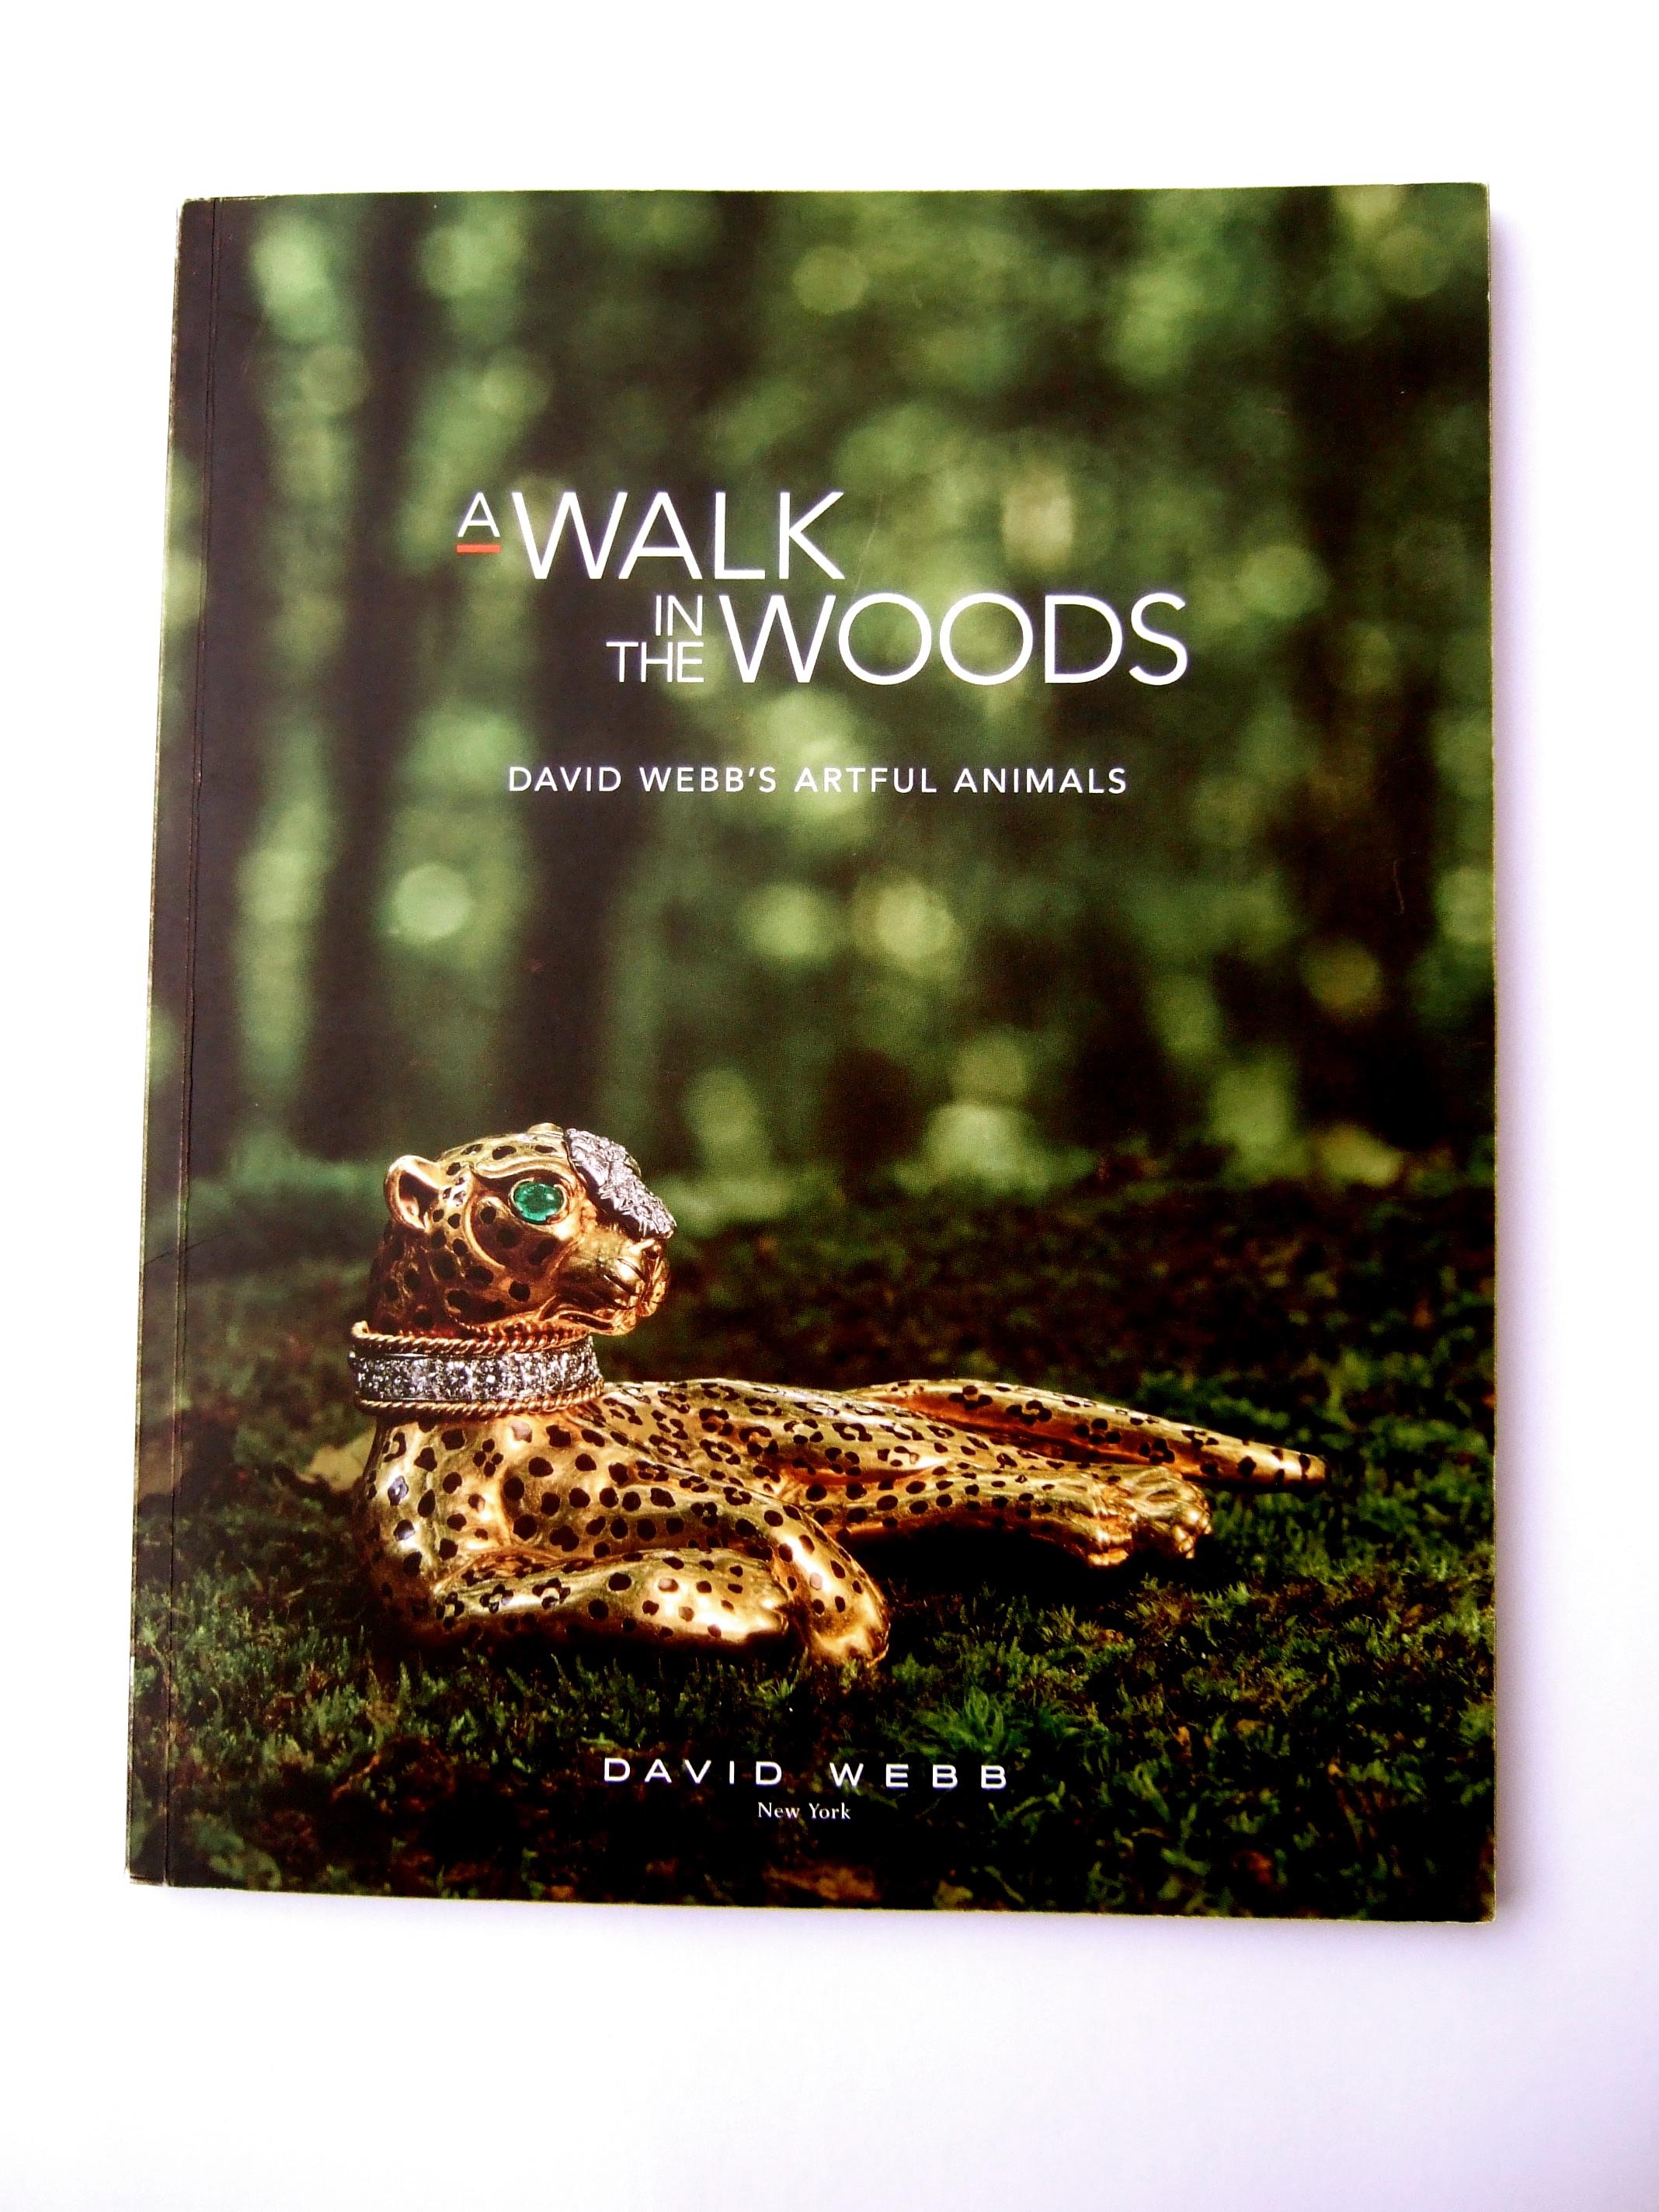 David Webb's A Walk in the Woods Artful Animals Soft Cover Pamphlet (en anglais)  Livre d'exposition c 2022.
La brochure à couverture souple provient d'une édition de 2022  Exposition David Webb 
présentant des archives des extraordinaires créations